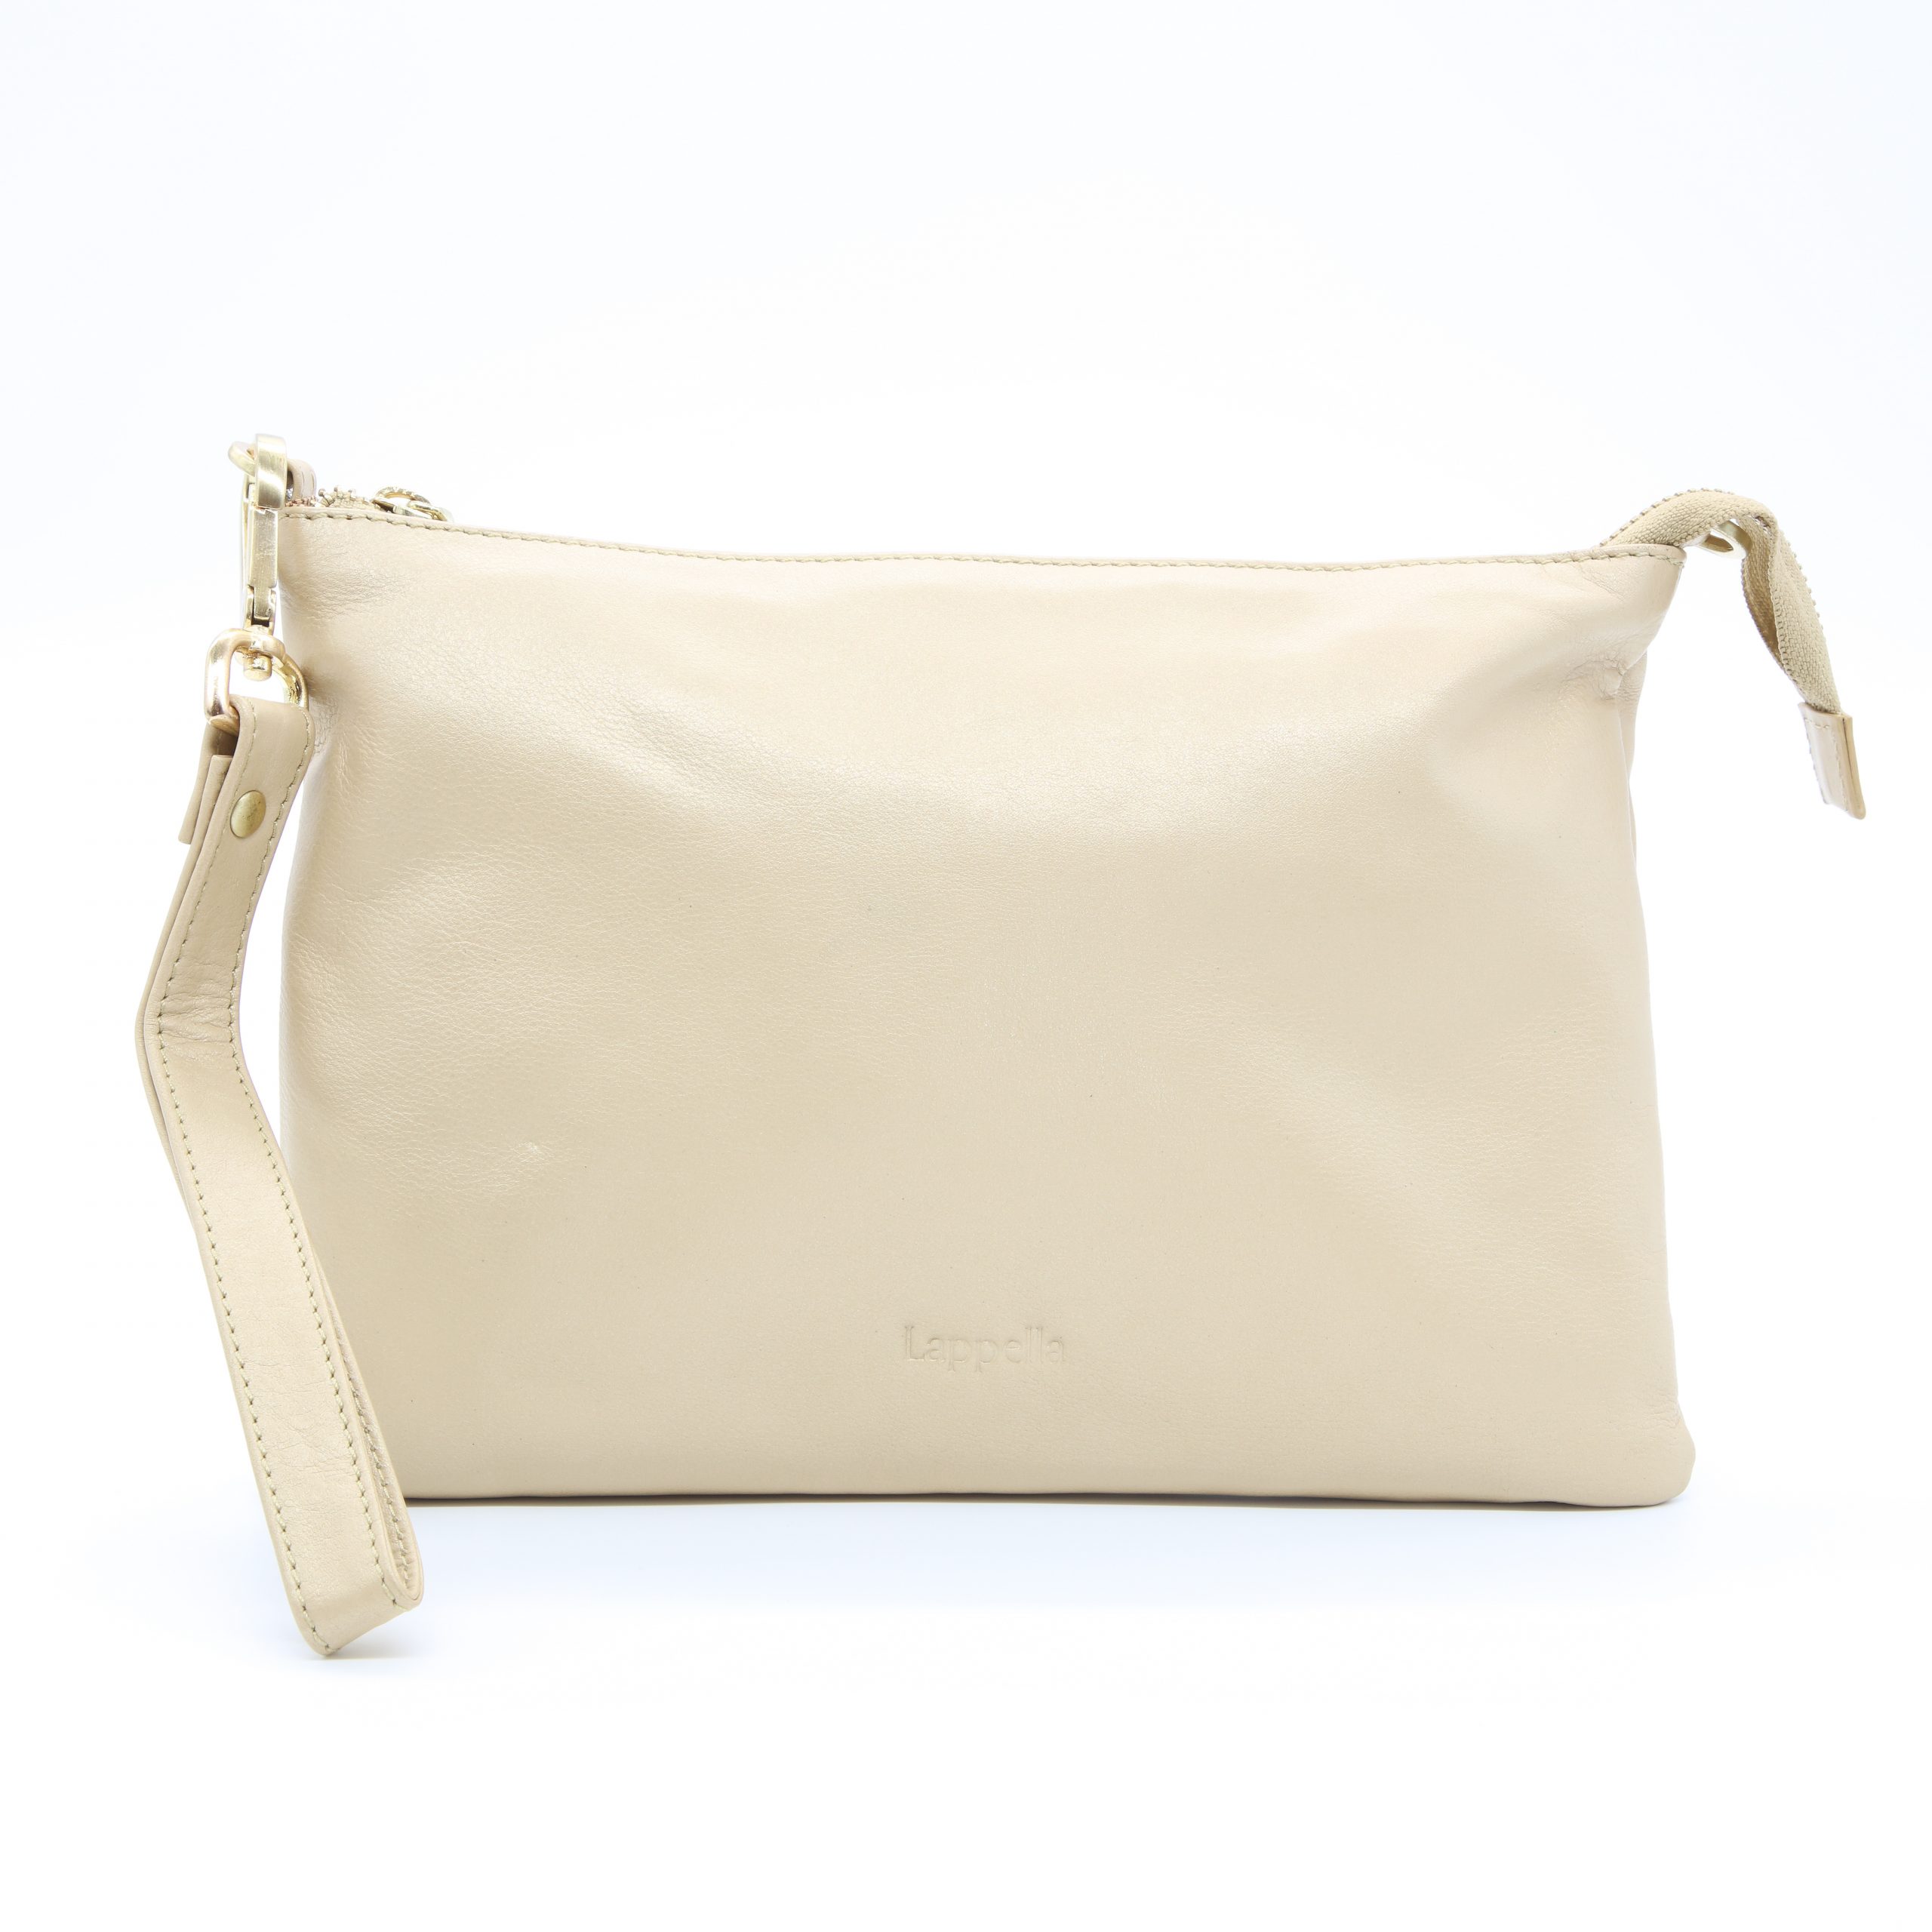 YASMIN CLASSIC Crossbody Bag/Clutch - Soft Leather by Lappella